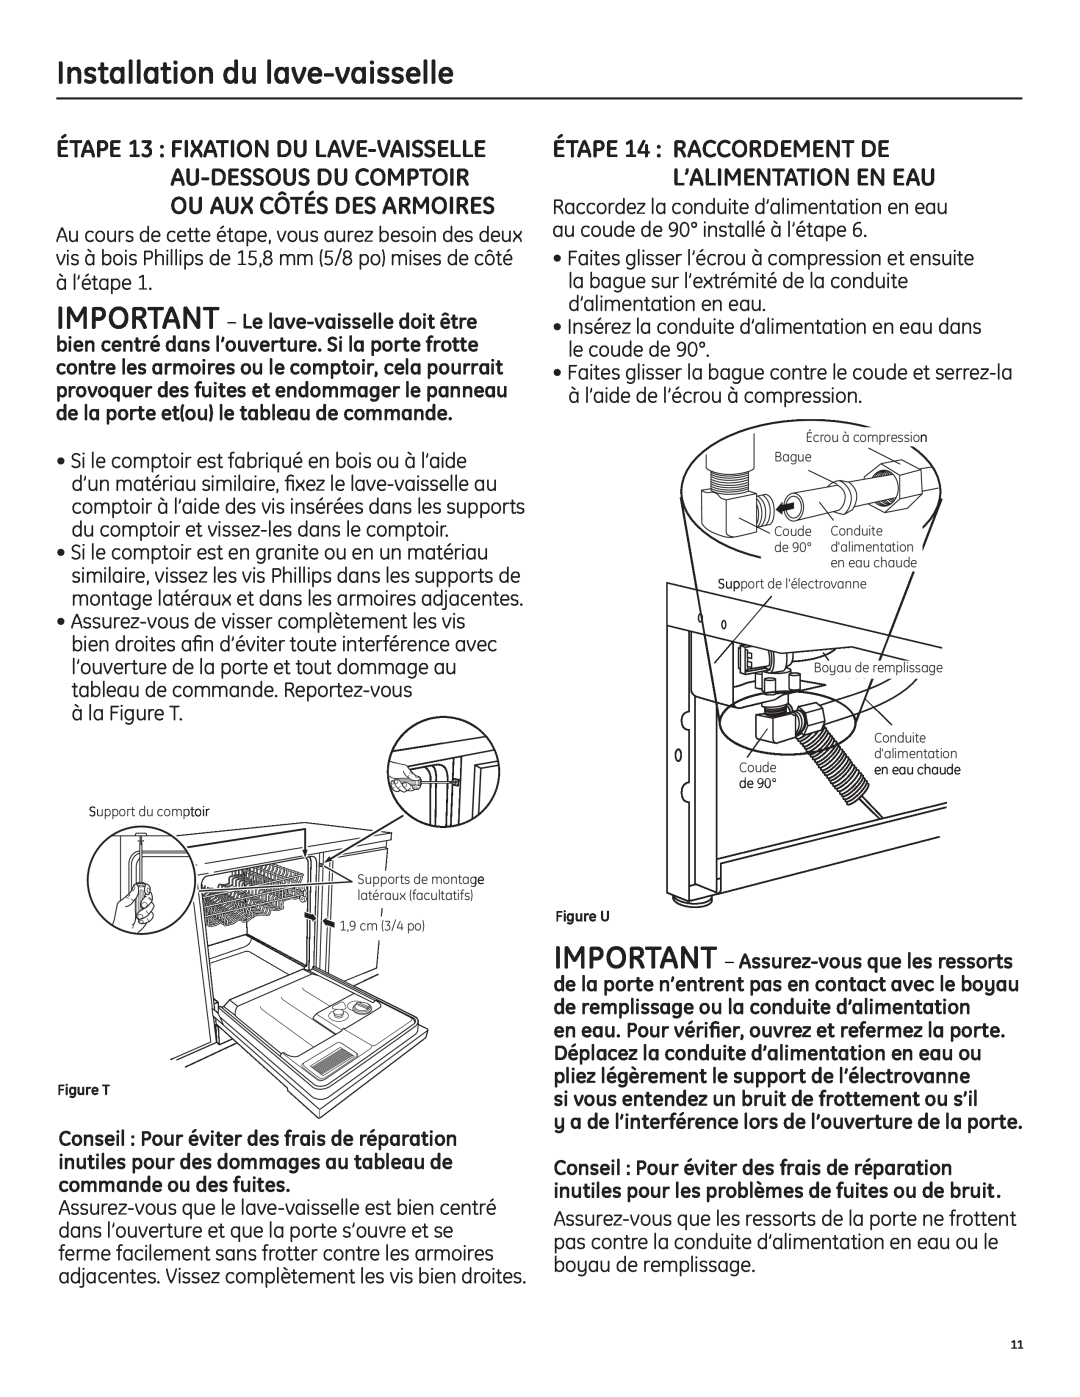 GE 206C1559P195 installation instructions ÉTAPE 14 RACCORDEMENT DE L’ALIMENTATION EN EAU, Installation du lave-vaisselle 